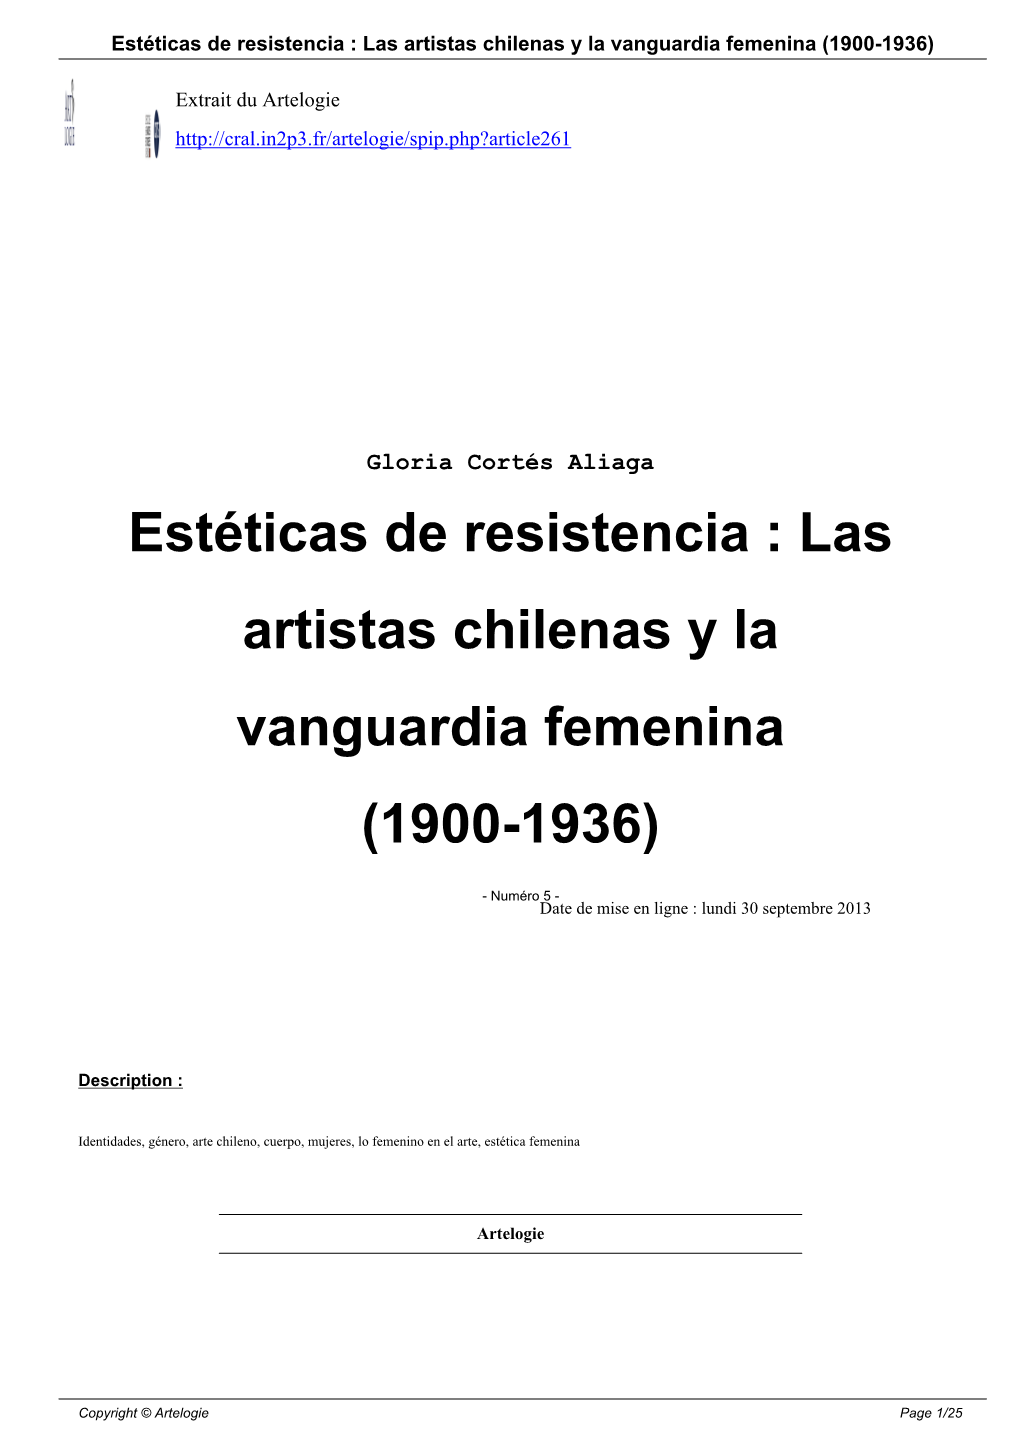 Estéticas De Resistencia : Las Artistas Chilenas Y La Vanguardia Femenina (1900-1936)